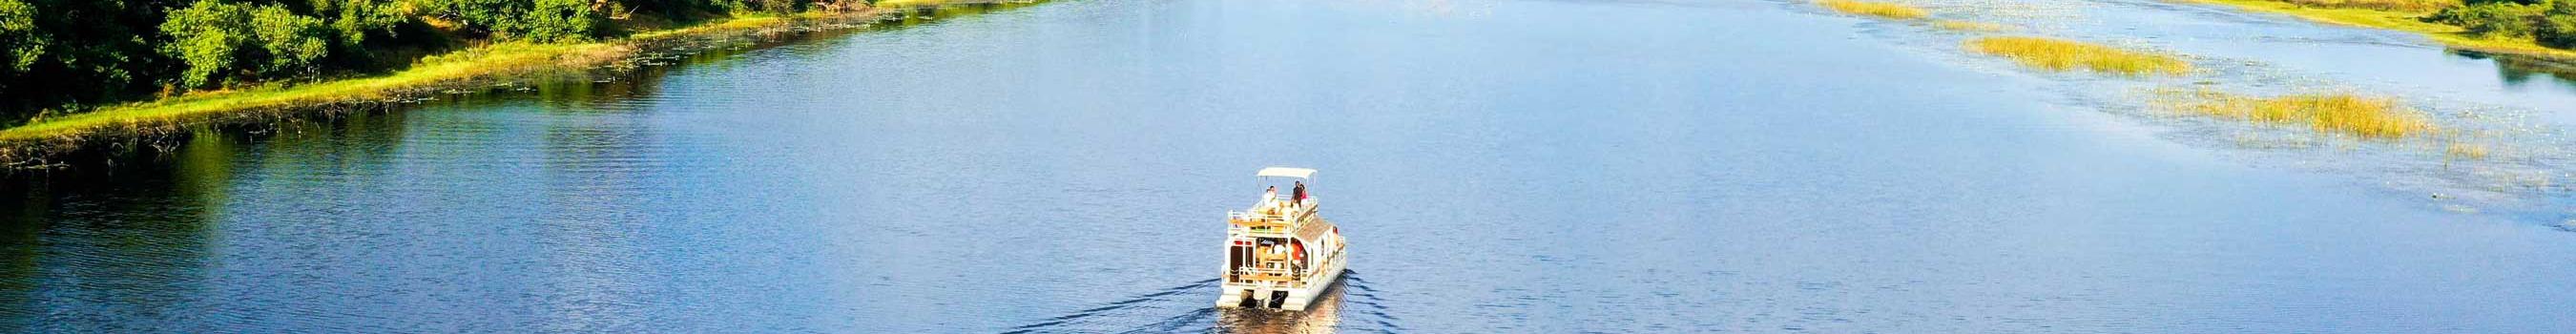 okavango delta river cruise